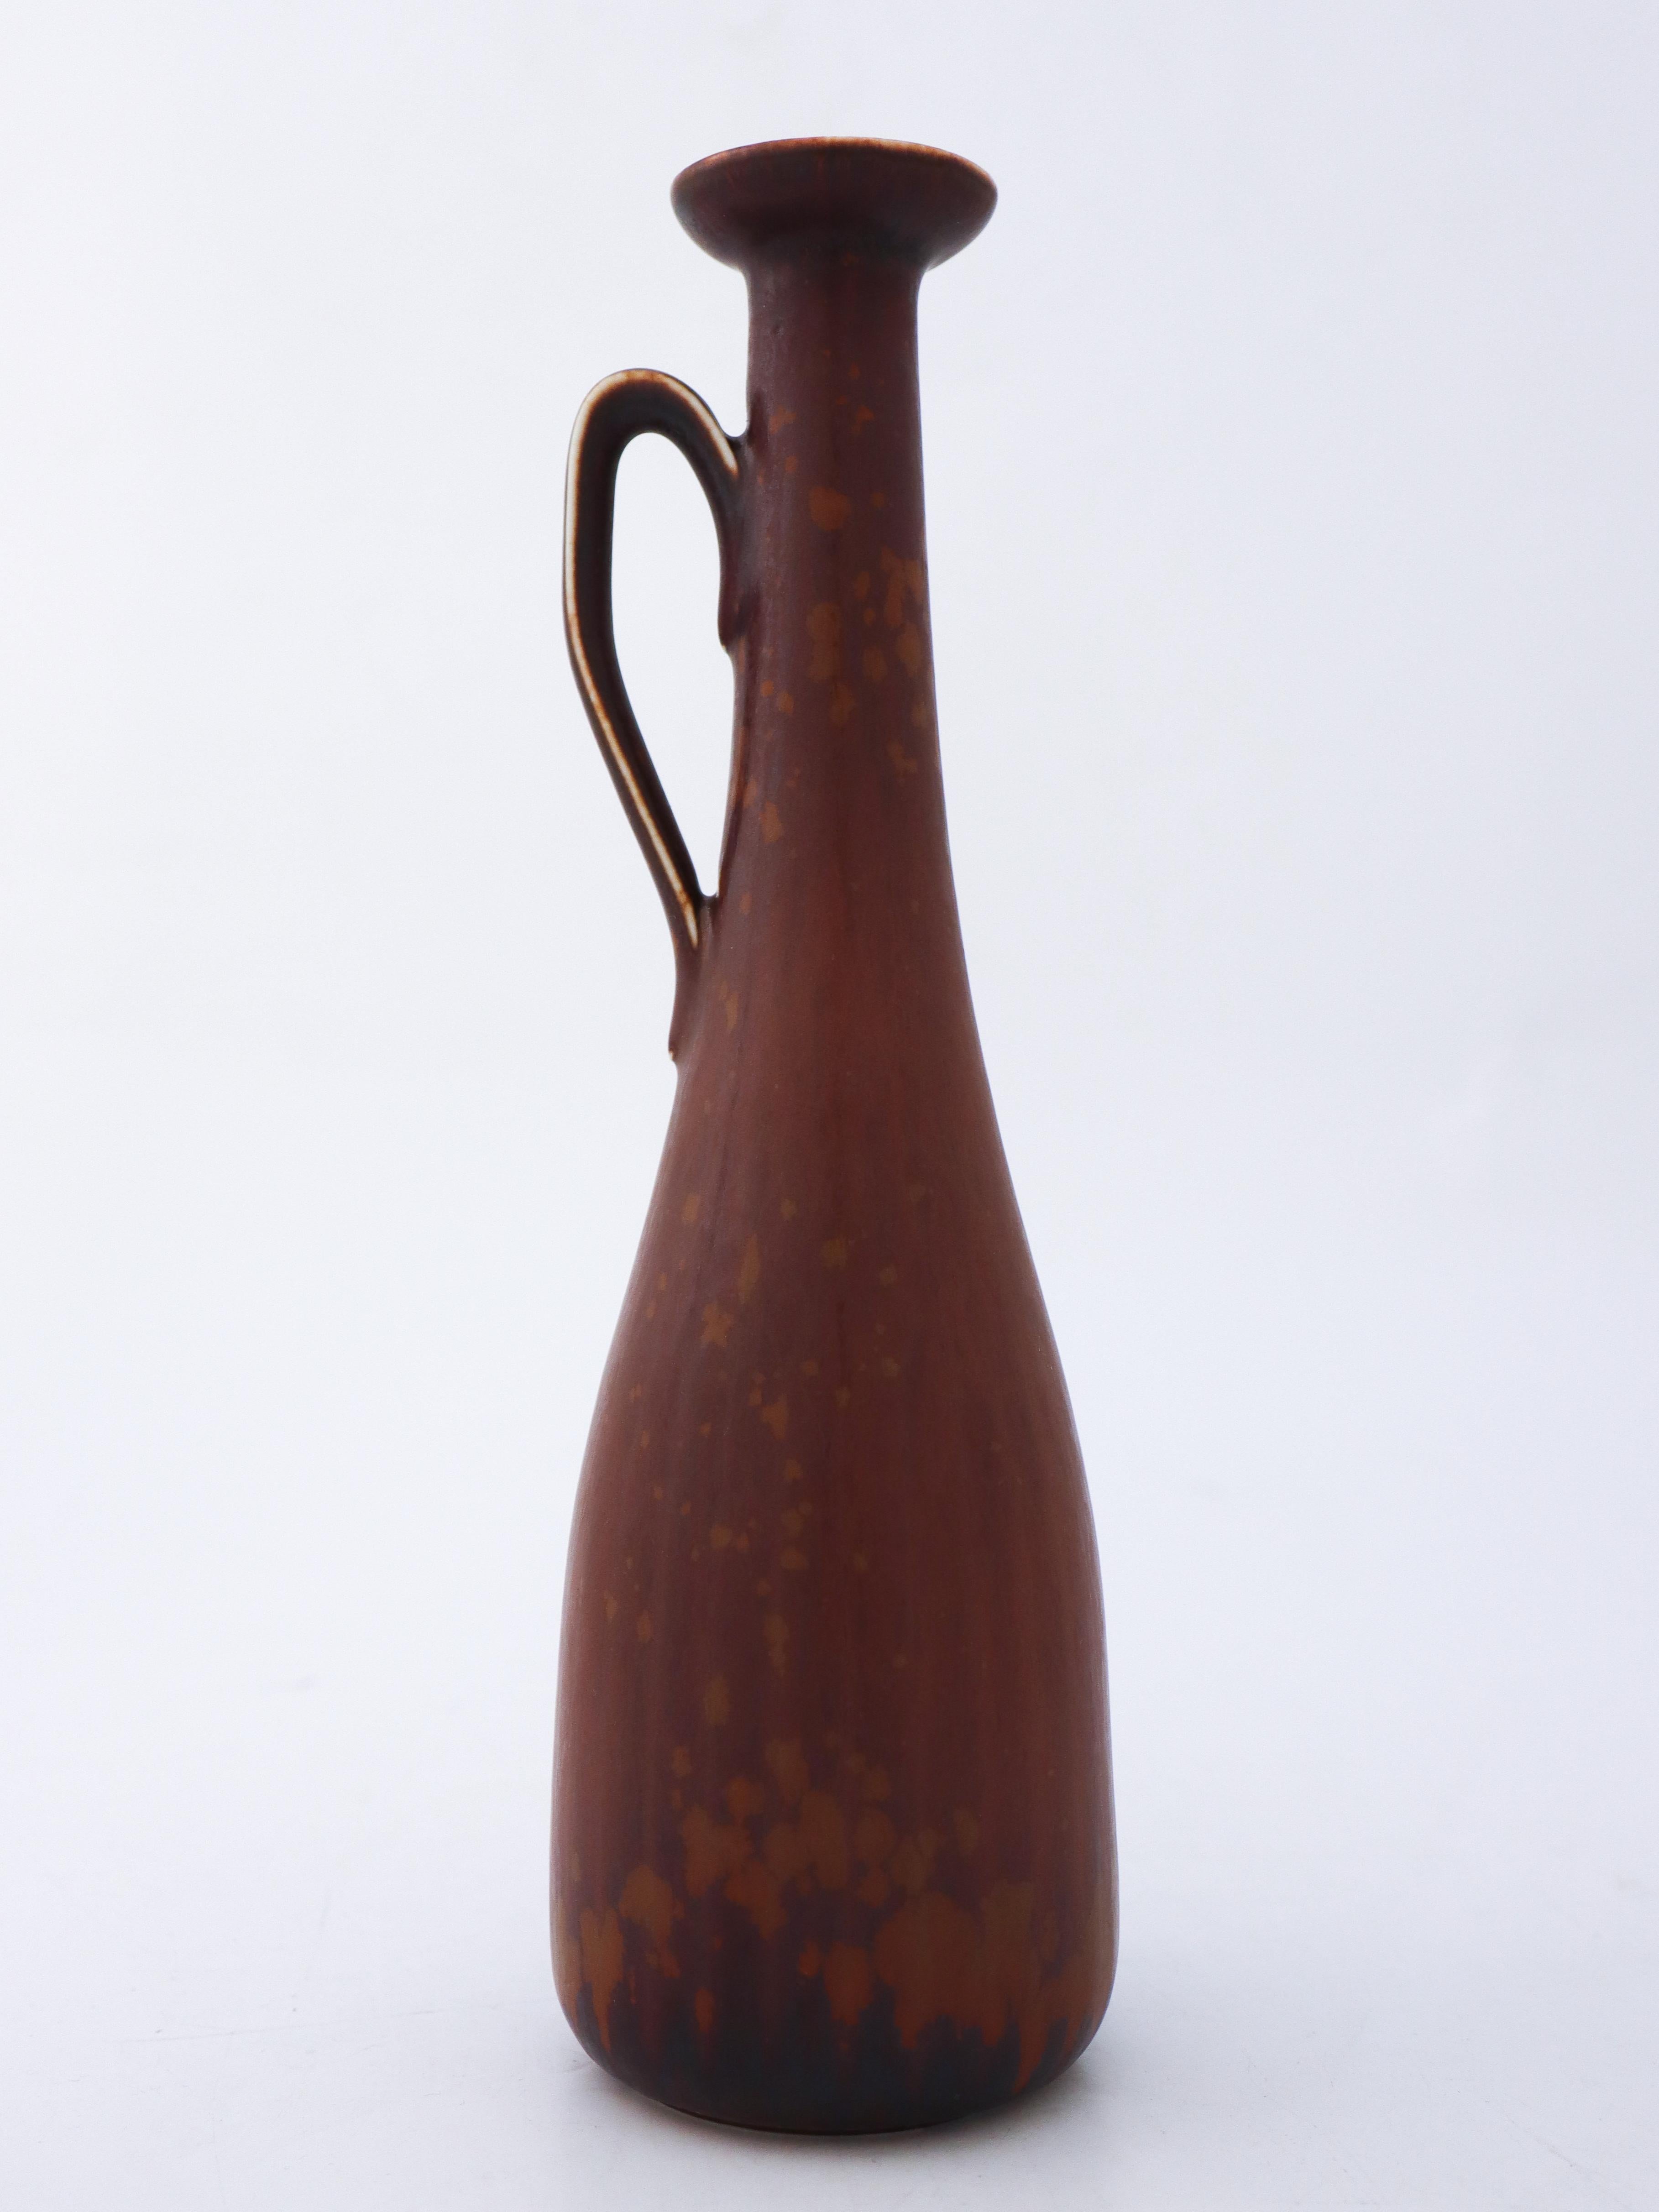 Die hübsche braune Vase wurde von Gunnar Nylund bei Rörstrand entworfen. Sie ist 24 cm hoch und hat einen Durchmesser von 6 cm. Es ist in neuwertigem Zustand und als 1. Qualität gekennzeichnet. 

Gunnar Nylund wurde 1904 in Paris geboren. Seine